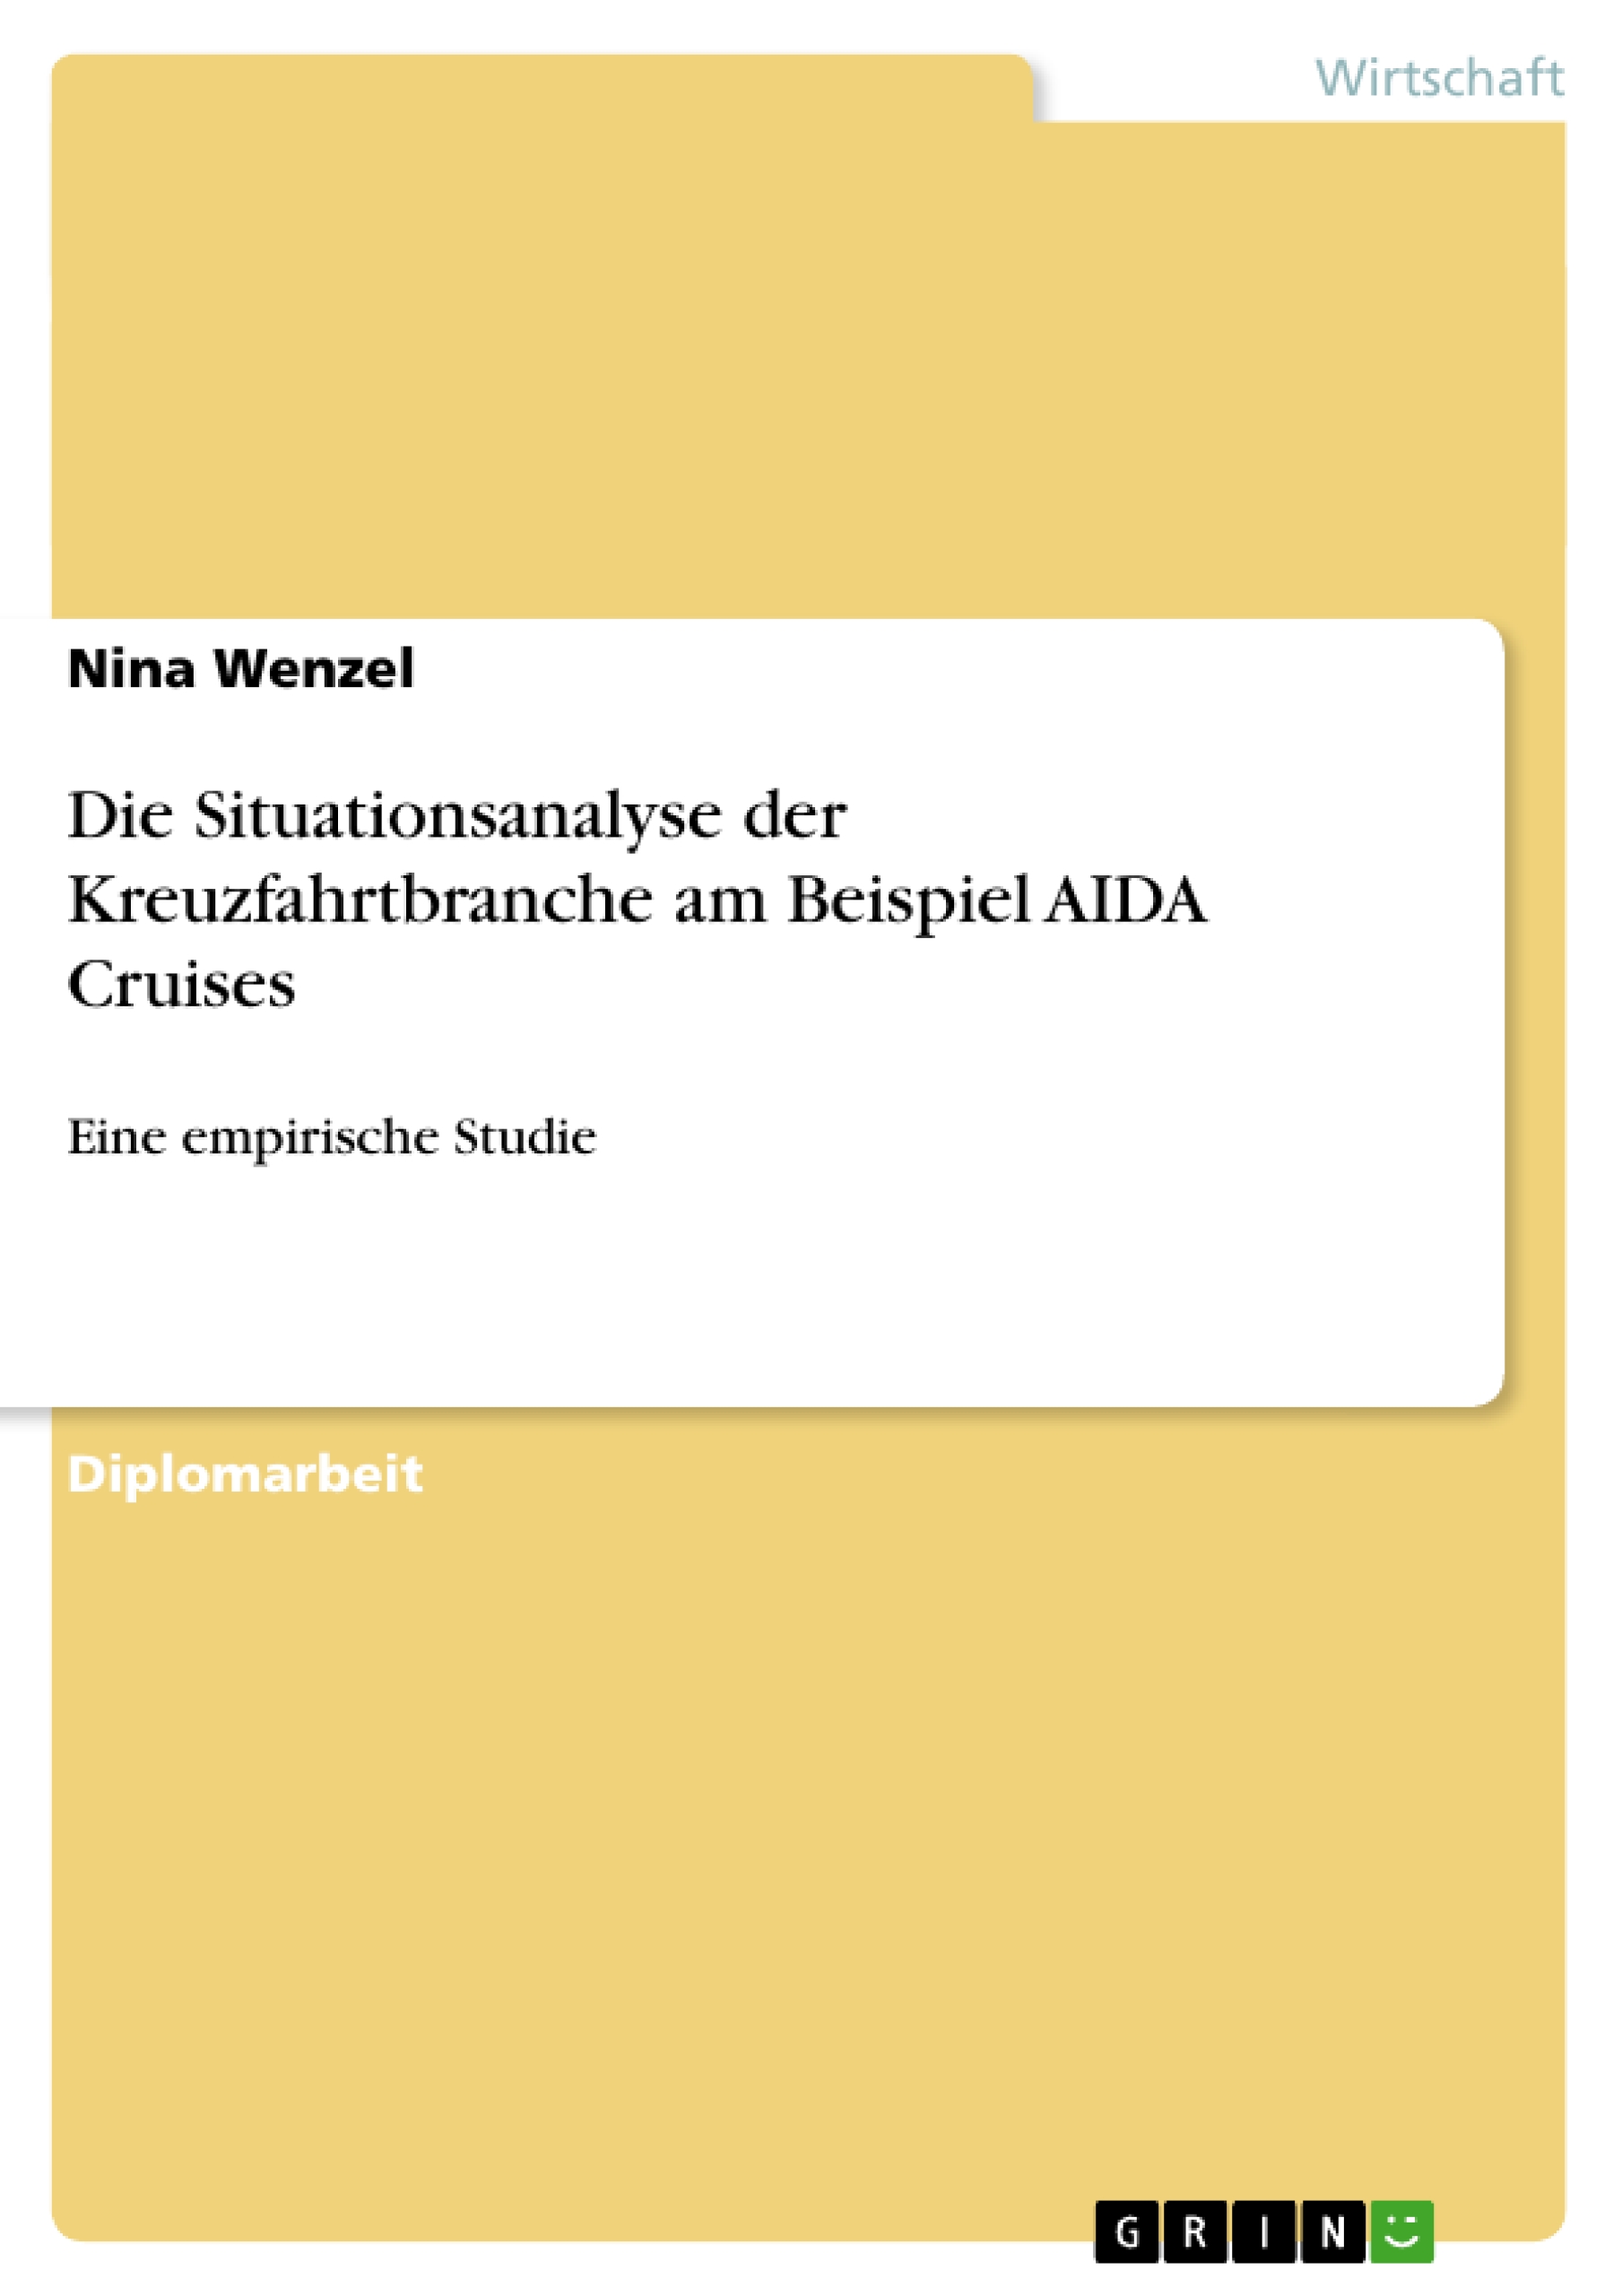 Die Situationsanalyse der Kreuzfahrtbranche am Beispiel AIDA Cruises - Wenzel, Nina